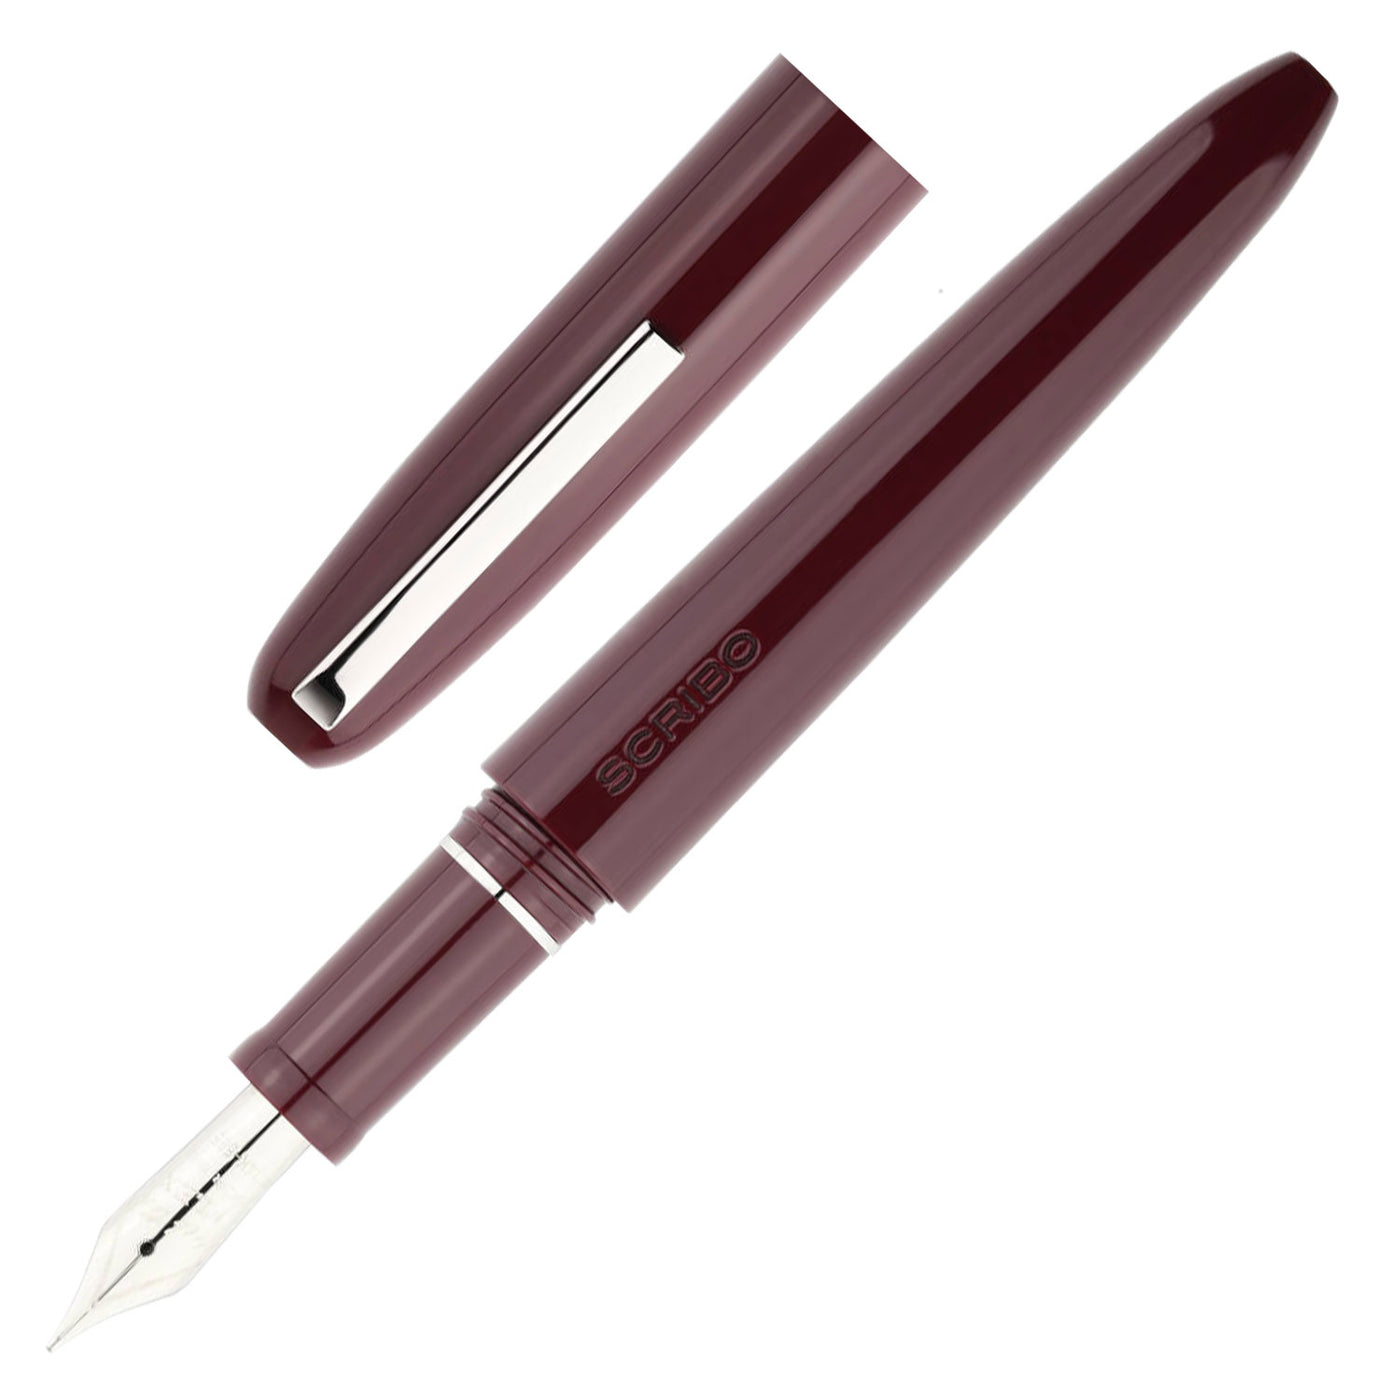 Scribo Piuma Fountain Pen - Ratio (Limited Edition) 1